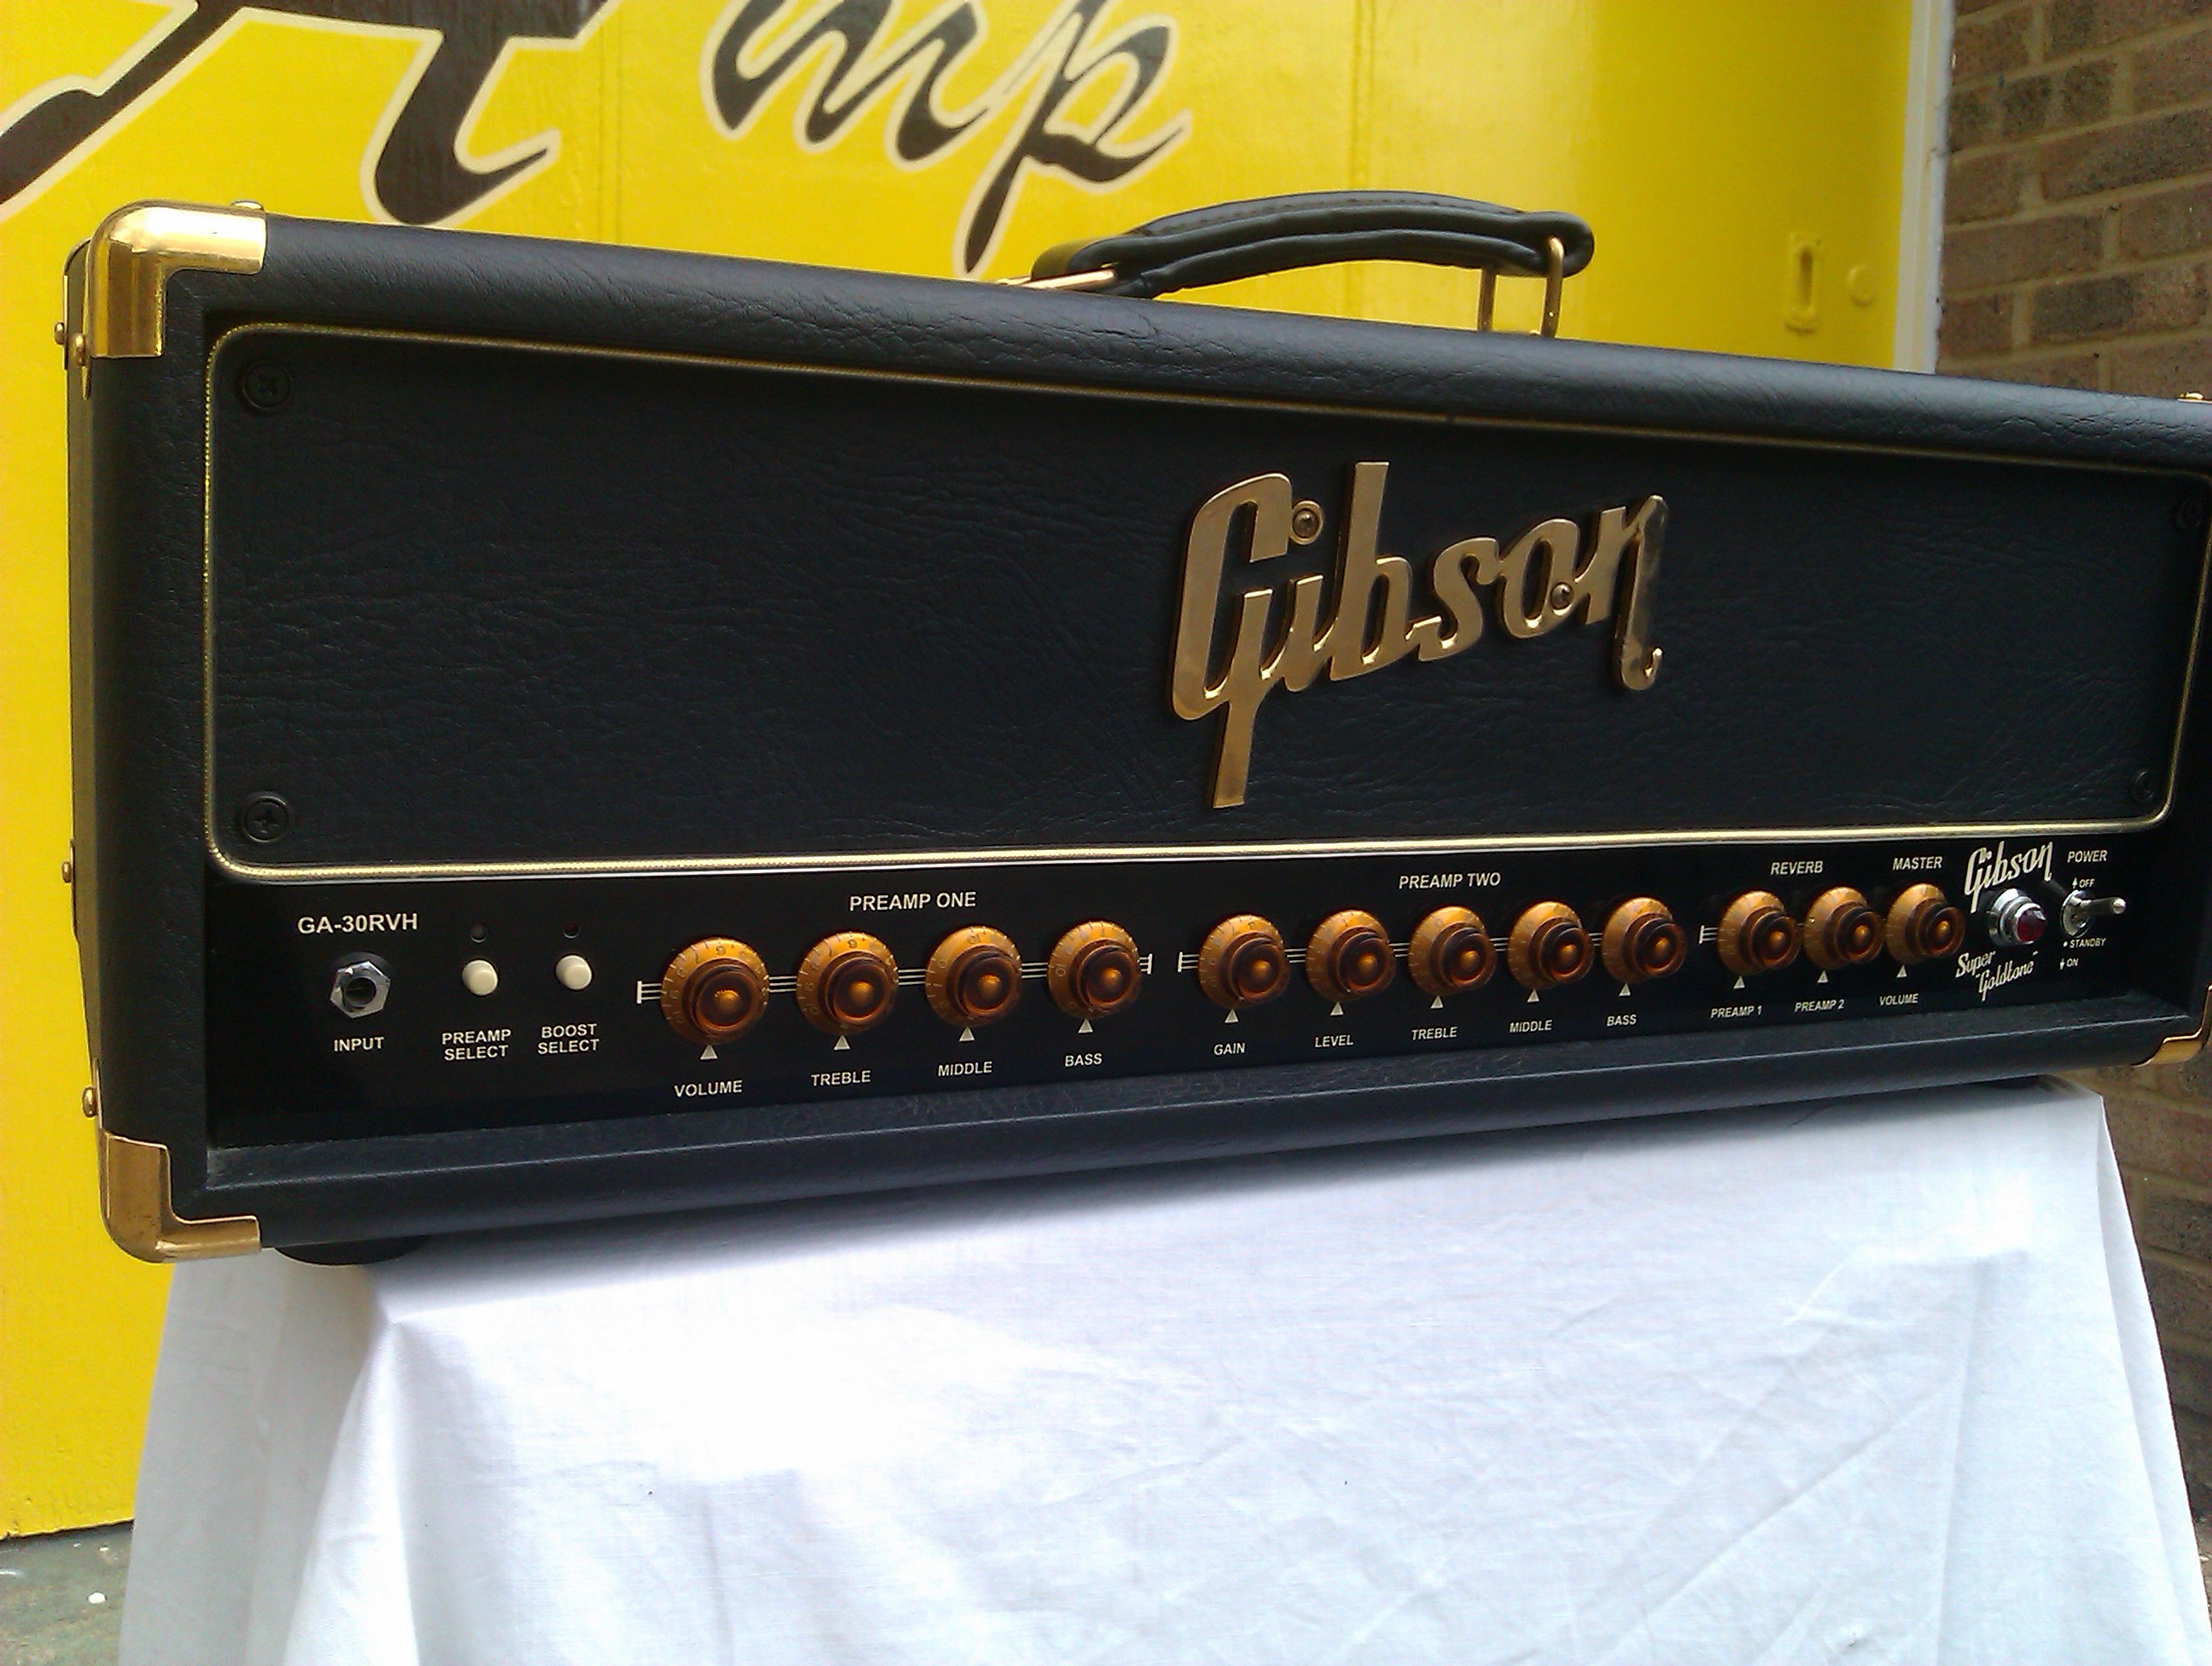 Rare Gibson valve amp